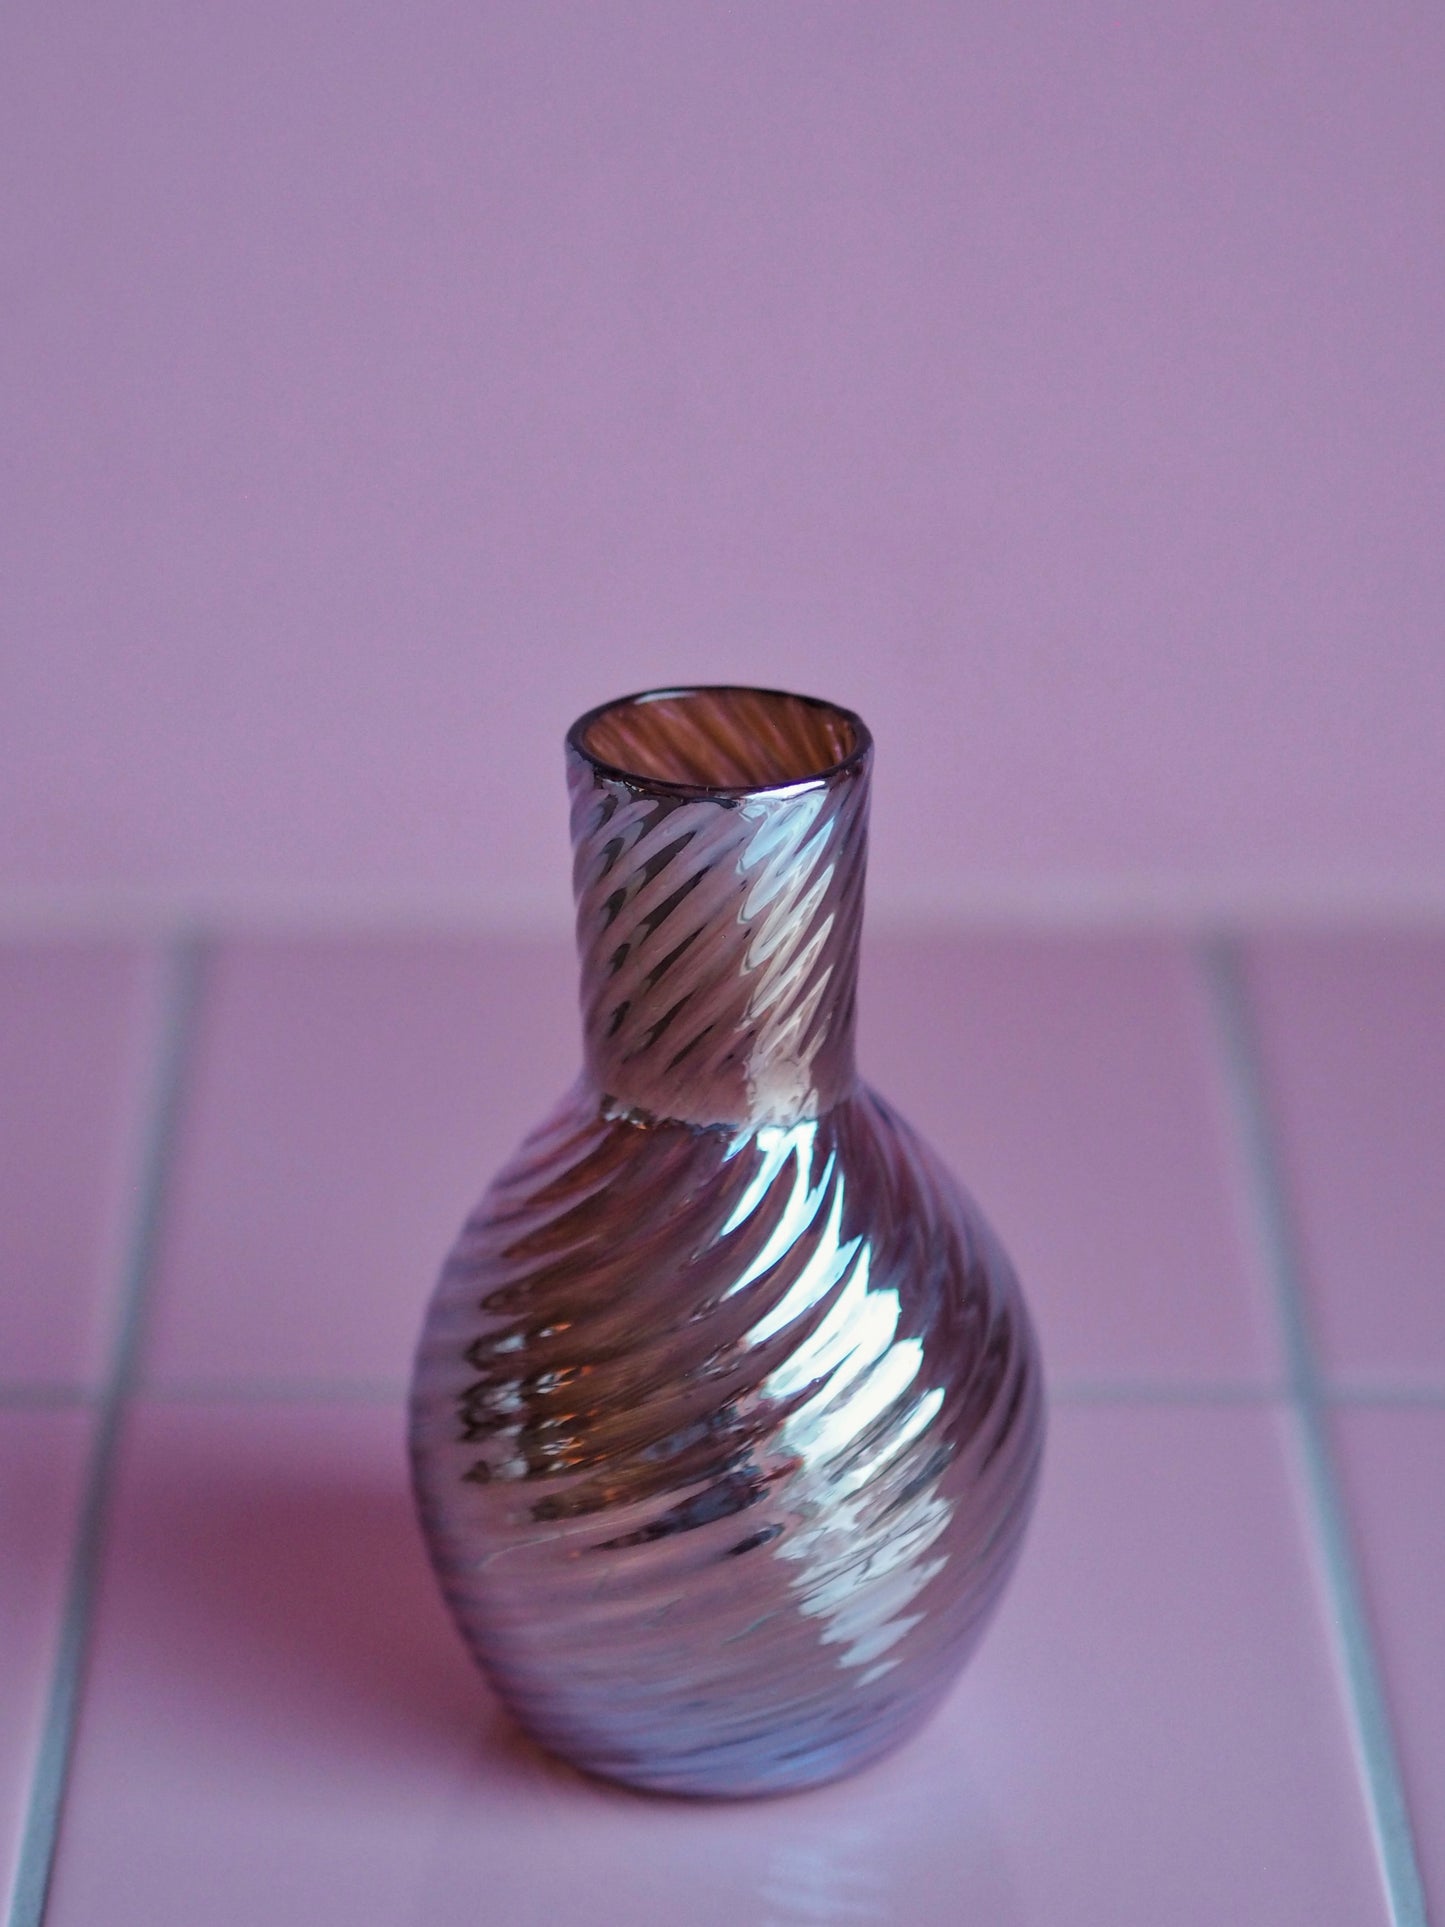 Spiral Vase by Katztudio